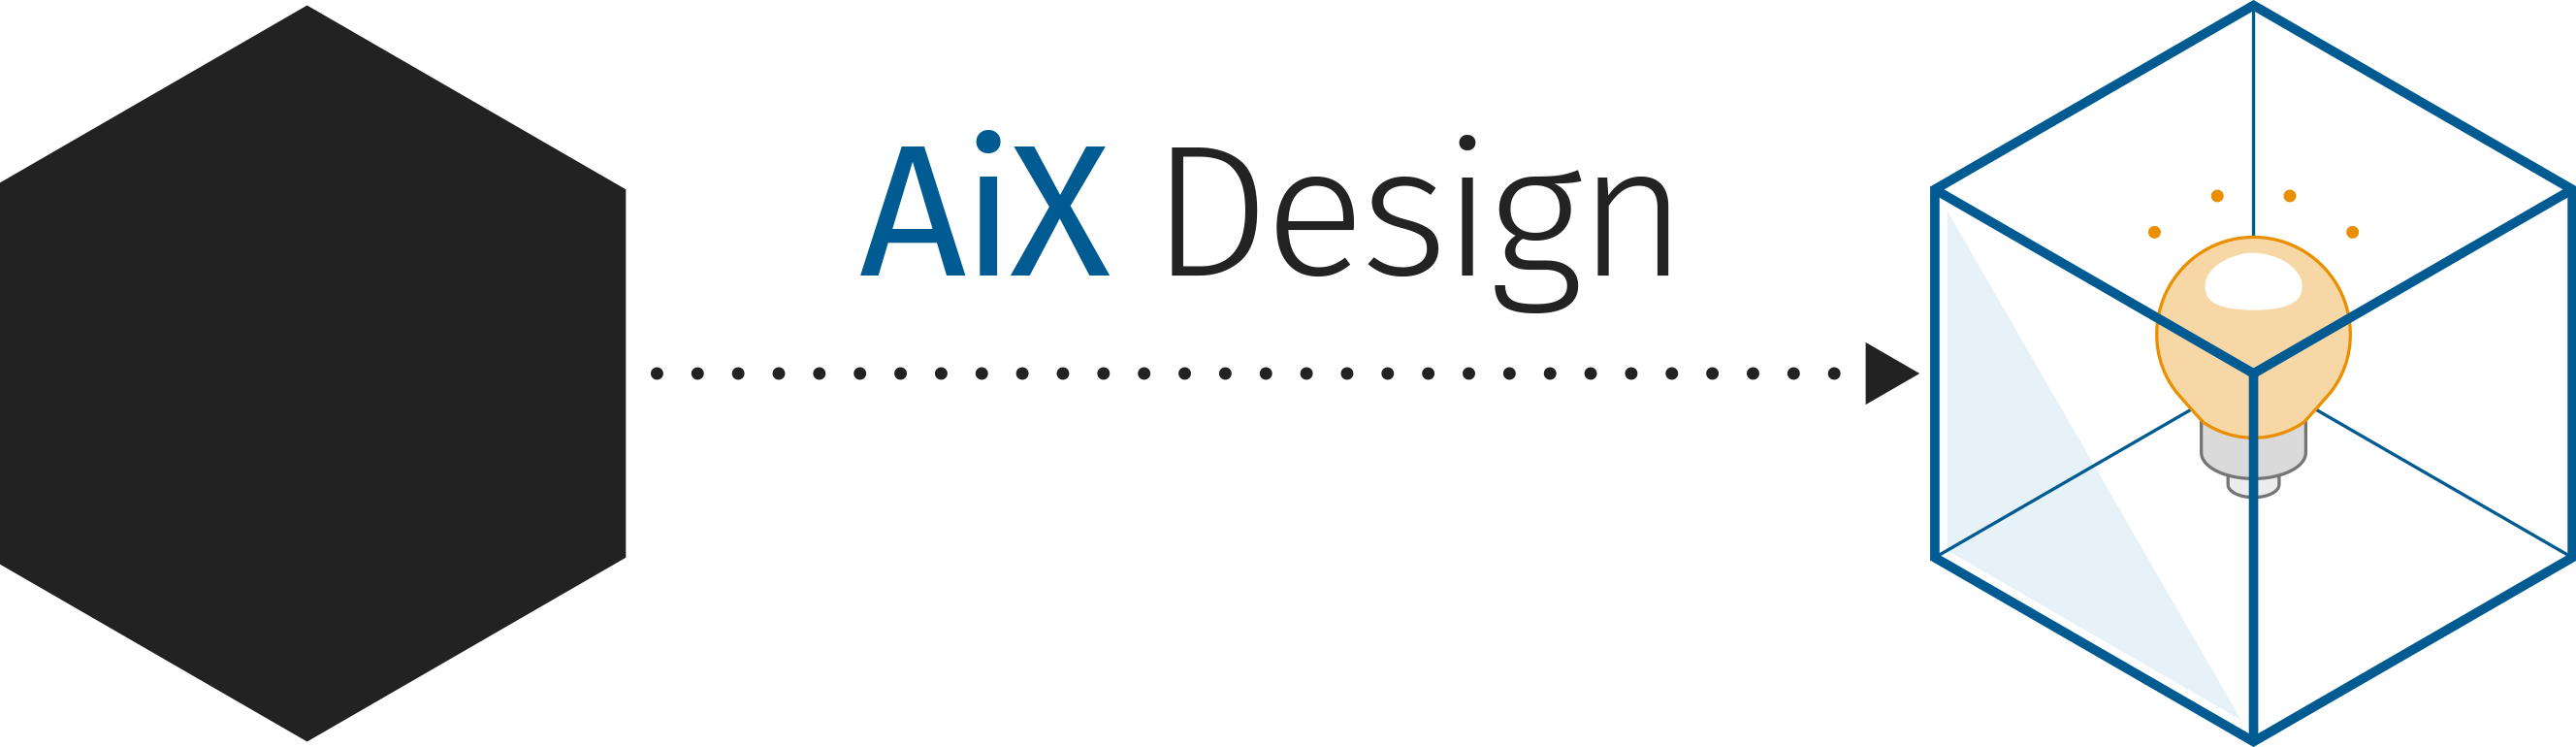 aix design